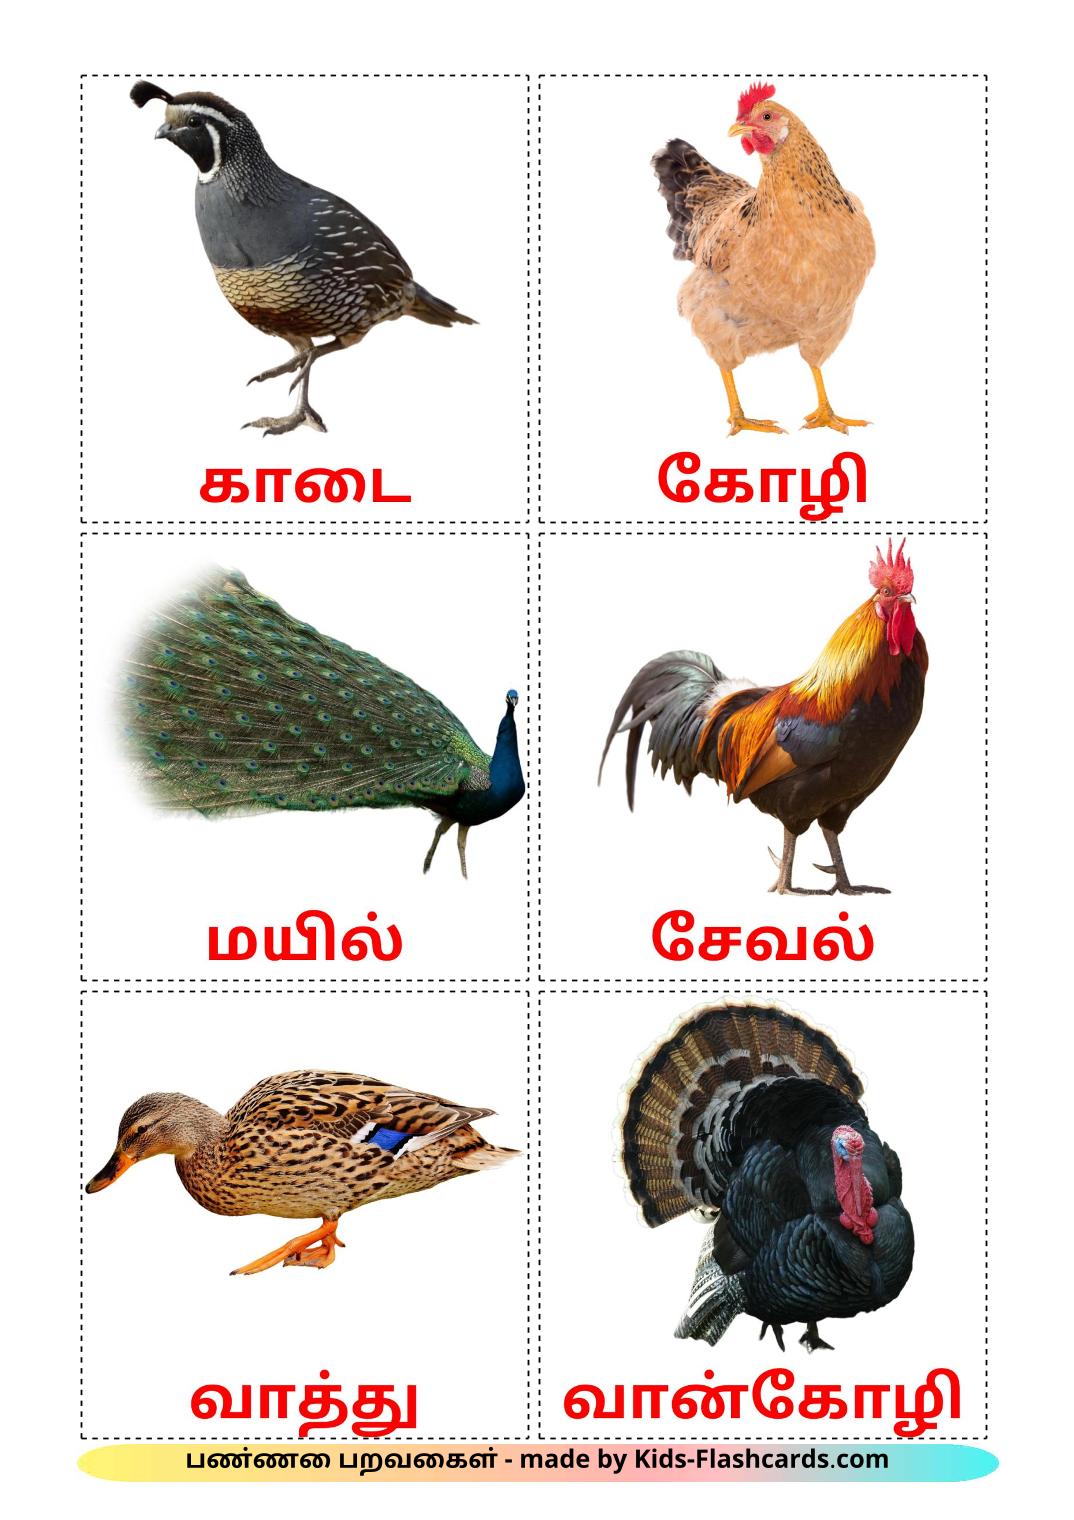 Птицы в деревне - 11 Карточек Домана на тамильском